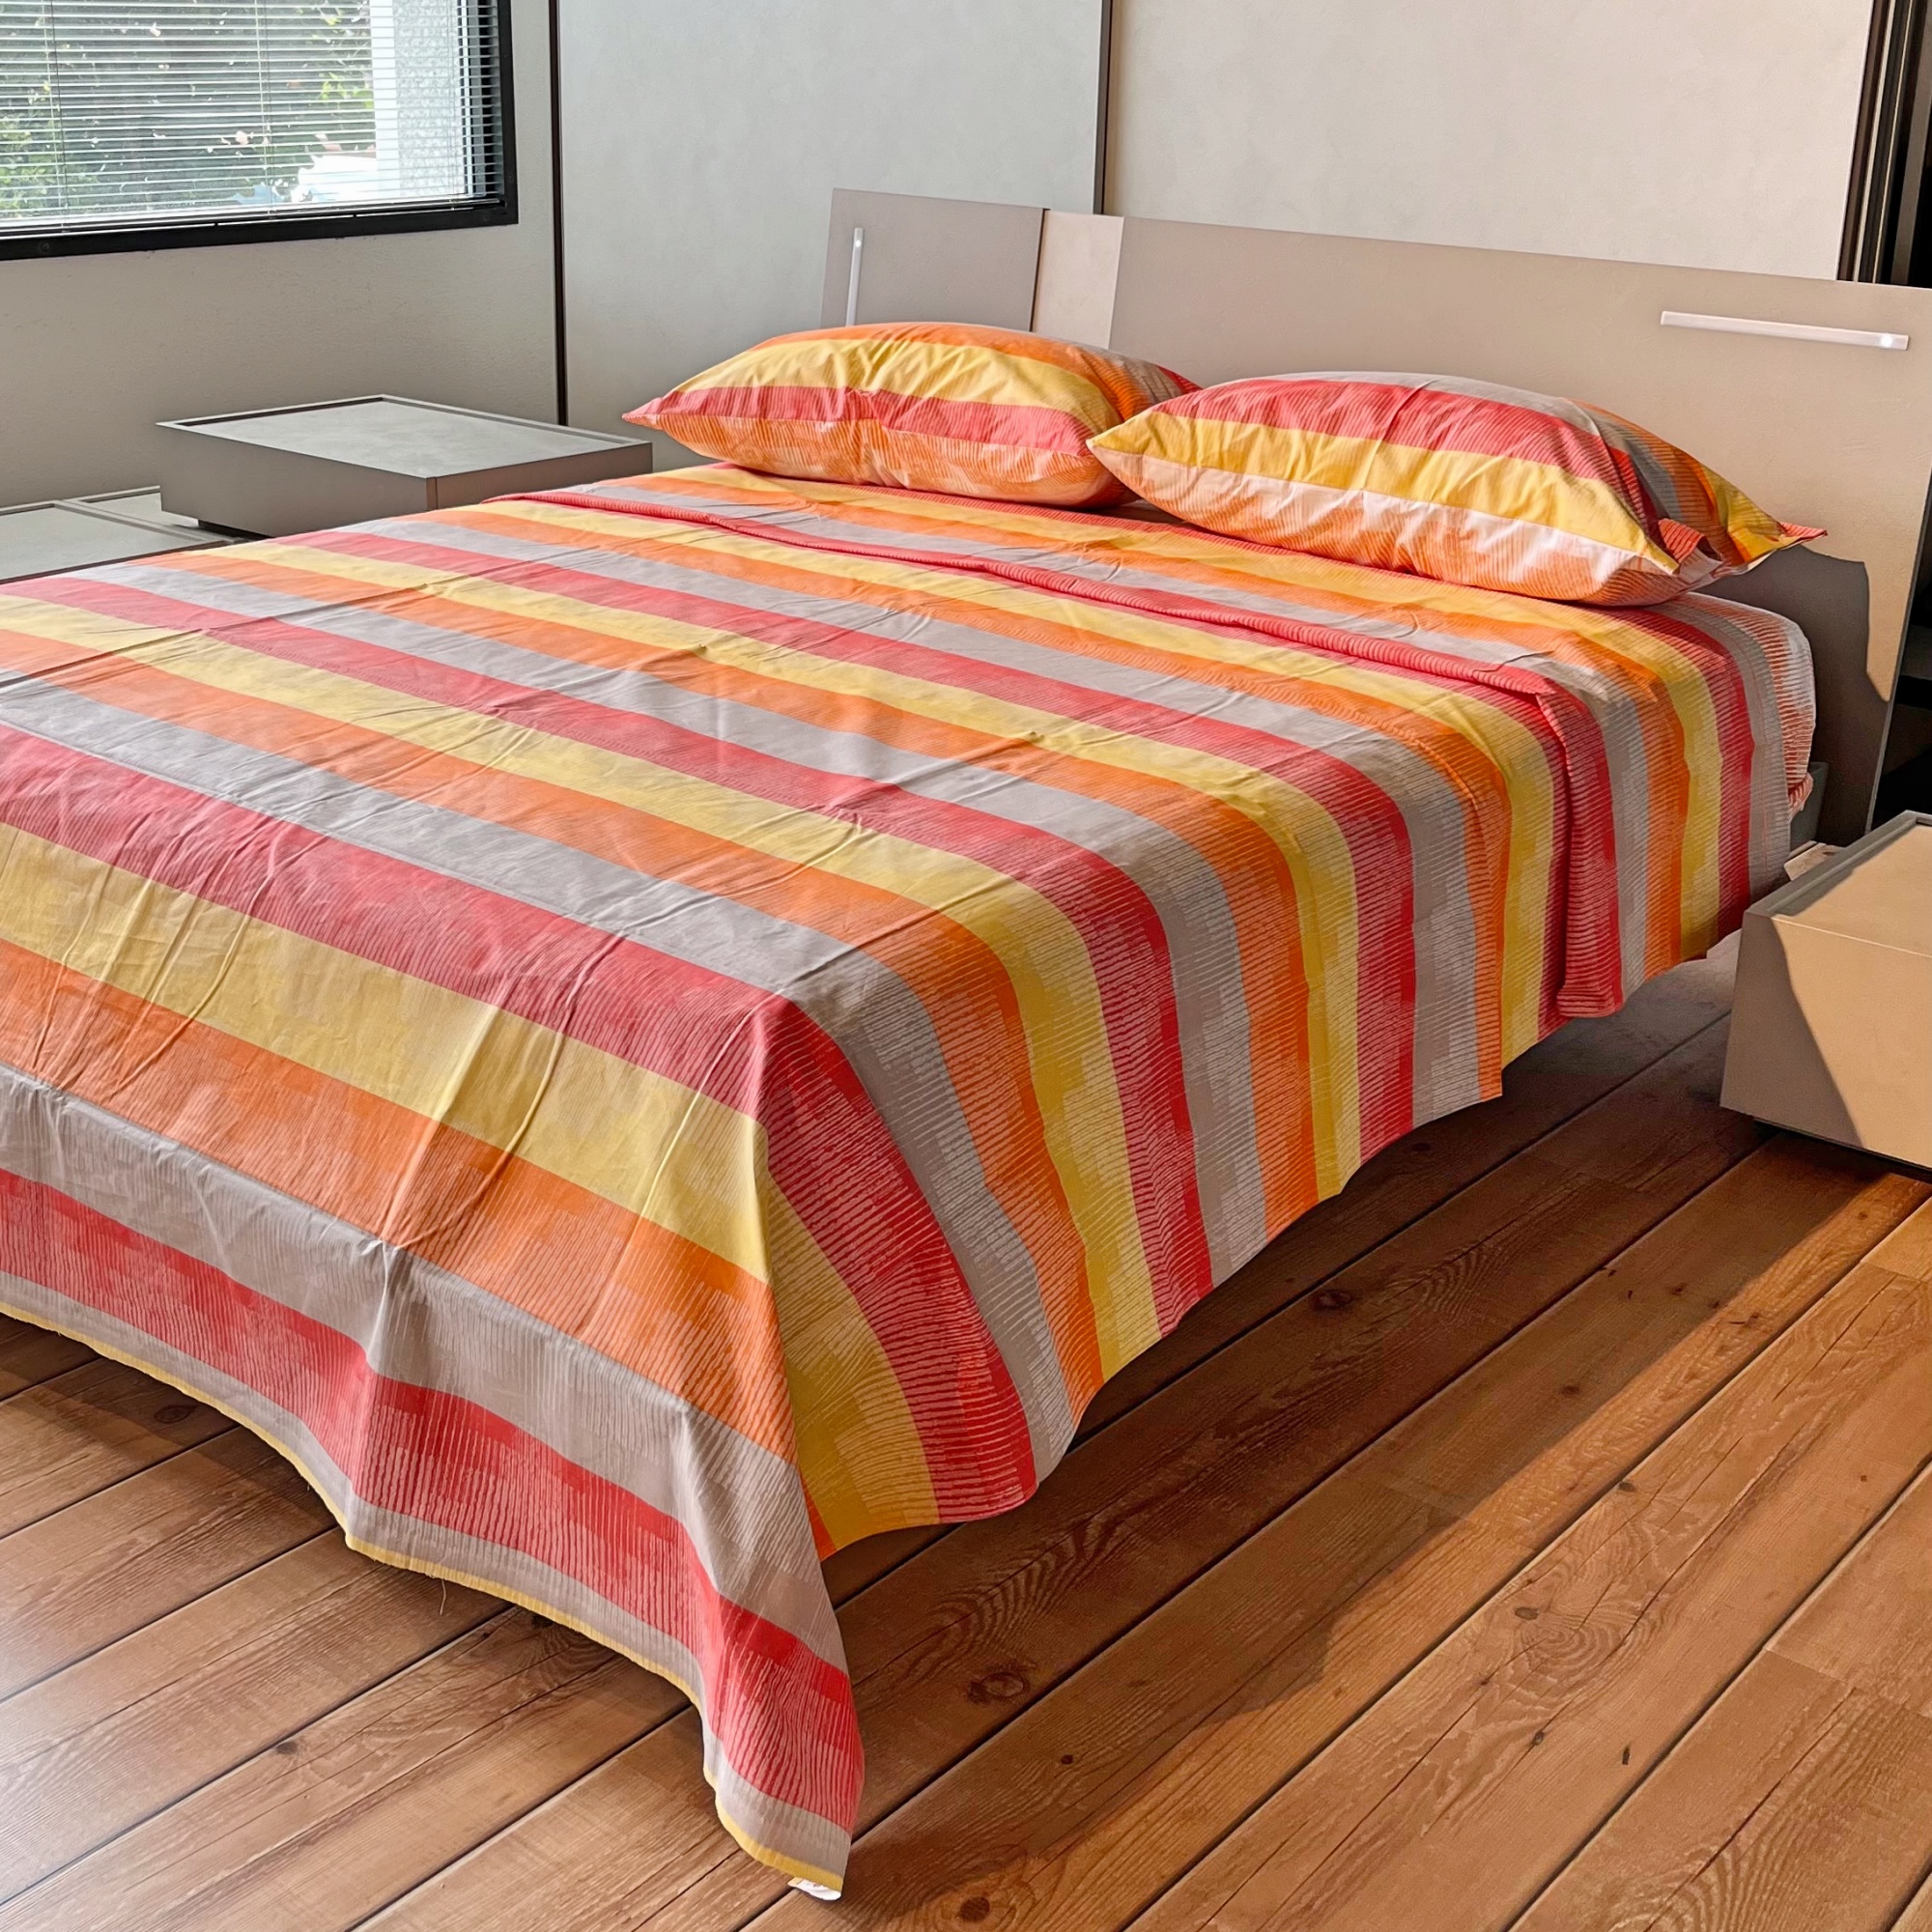 completo lenzuola puro cotone letto singolo e matrimoniale mod. multicolor